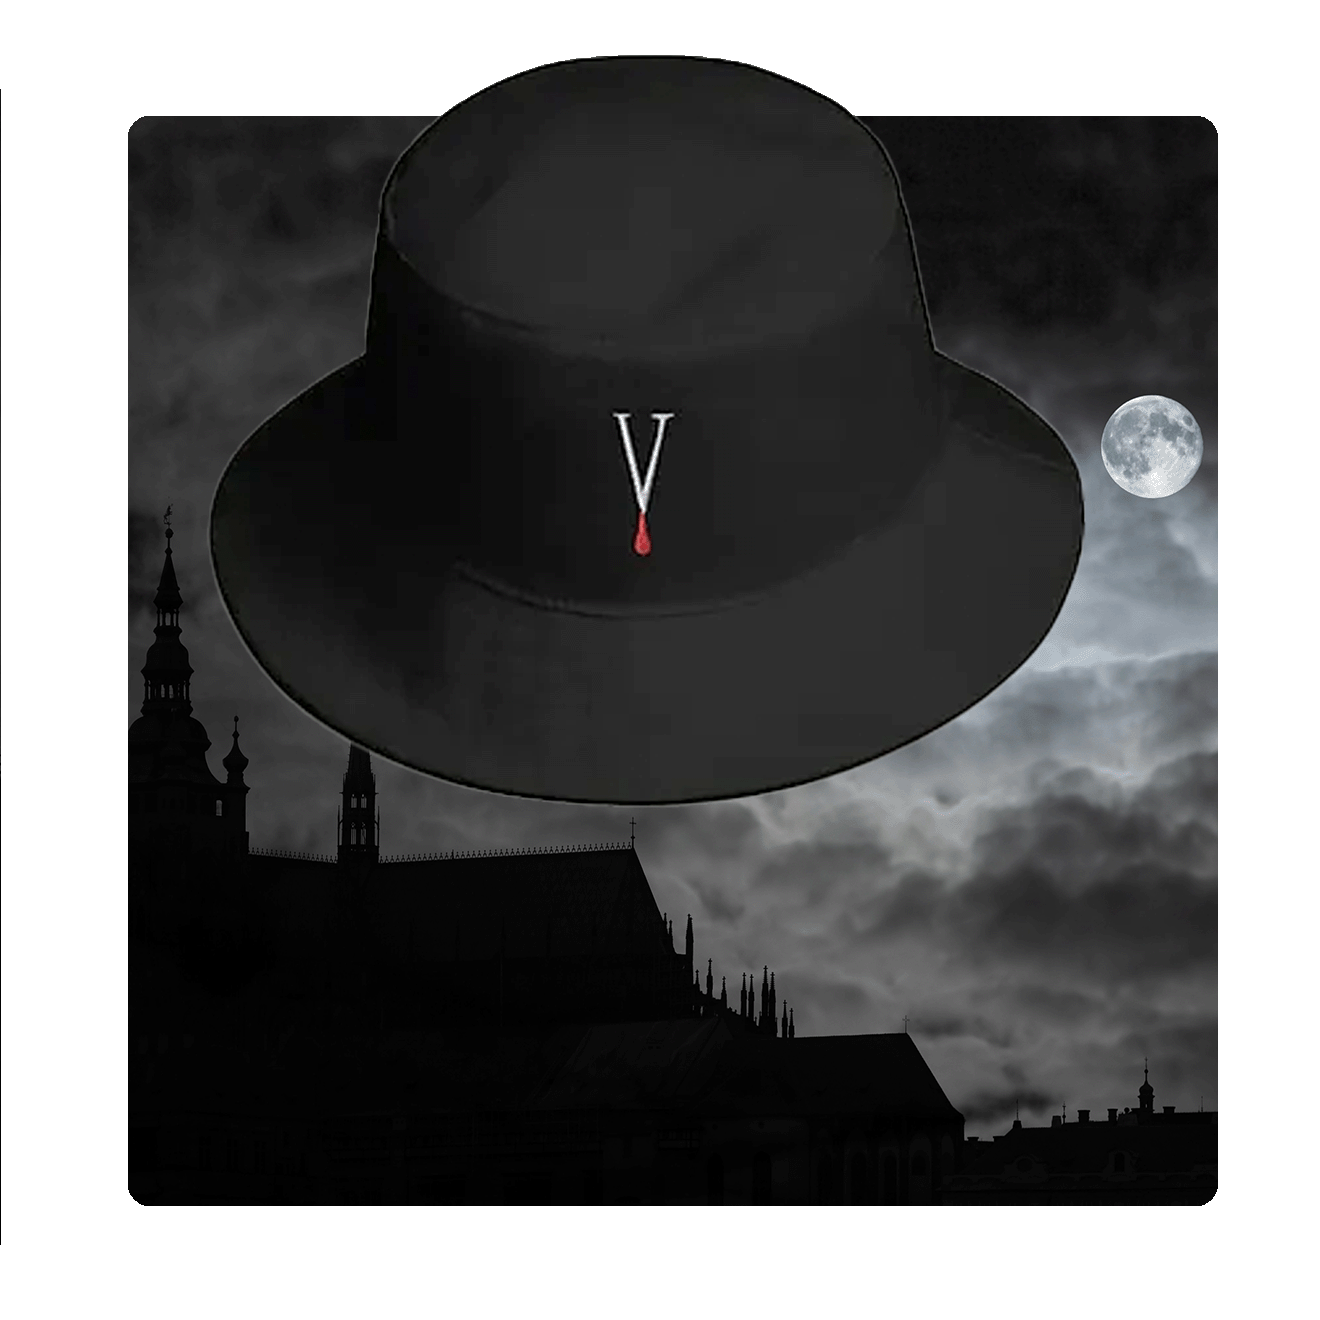 Vampire V Logo Bucket Hat